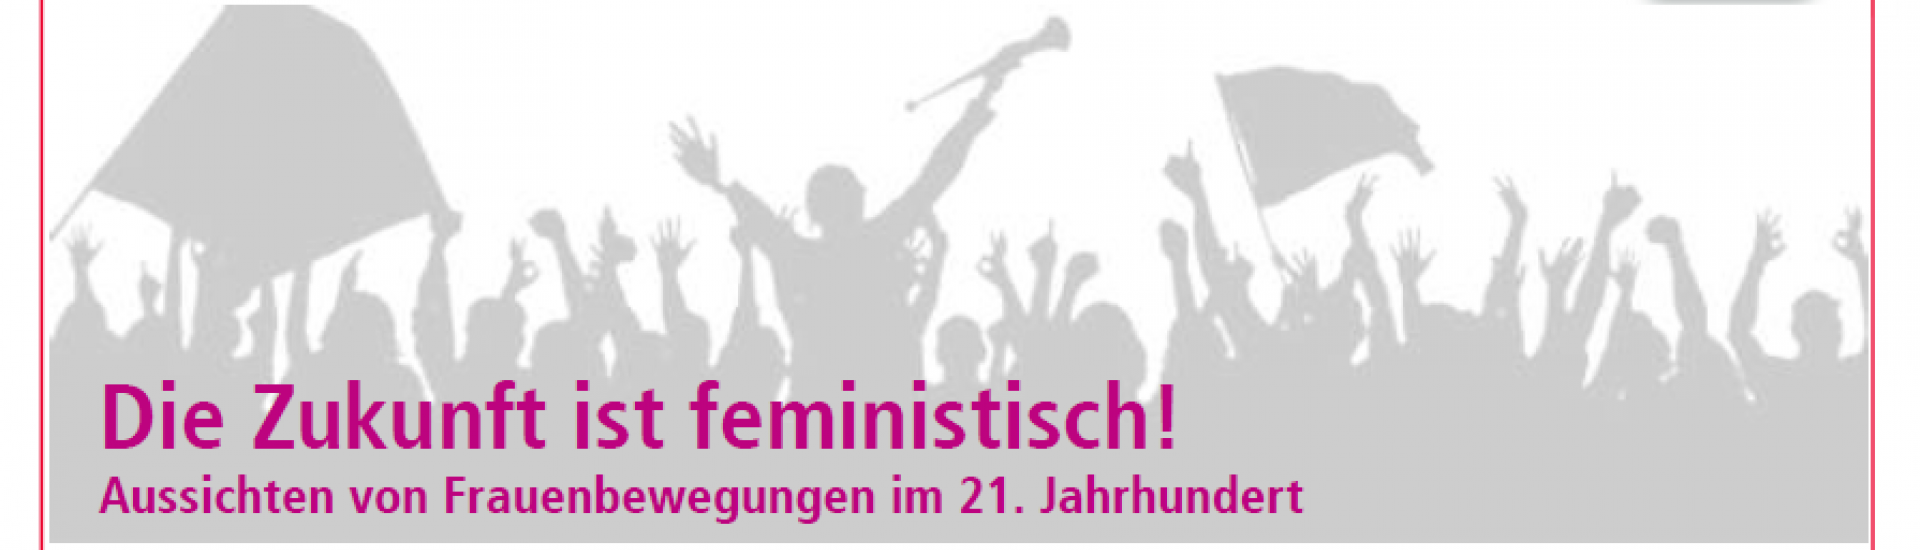 Bild mit dem Titel: Die Zukunft ist feministisch! Aussichten von Frauenbewegungen im 21. Jahrhundert